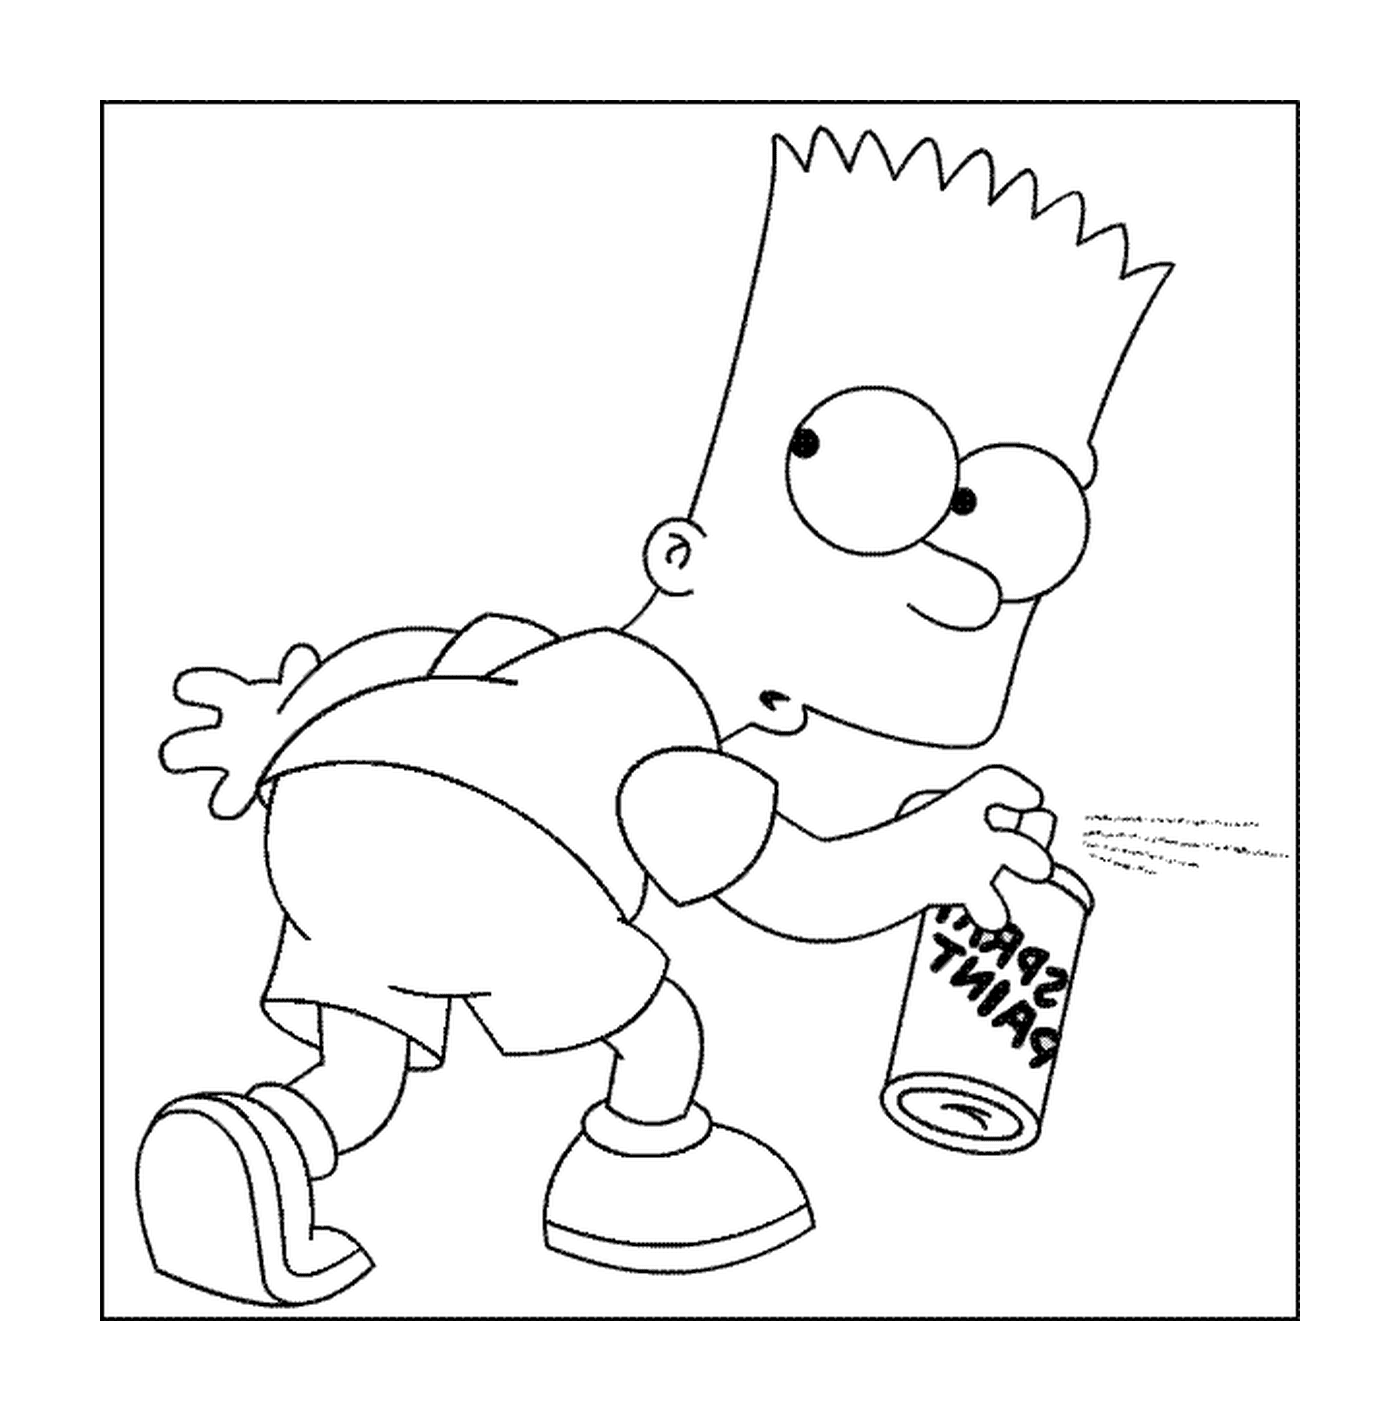  Барт делает ярлык 